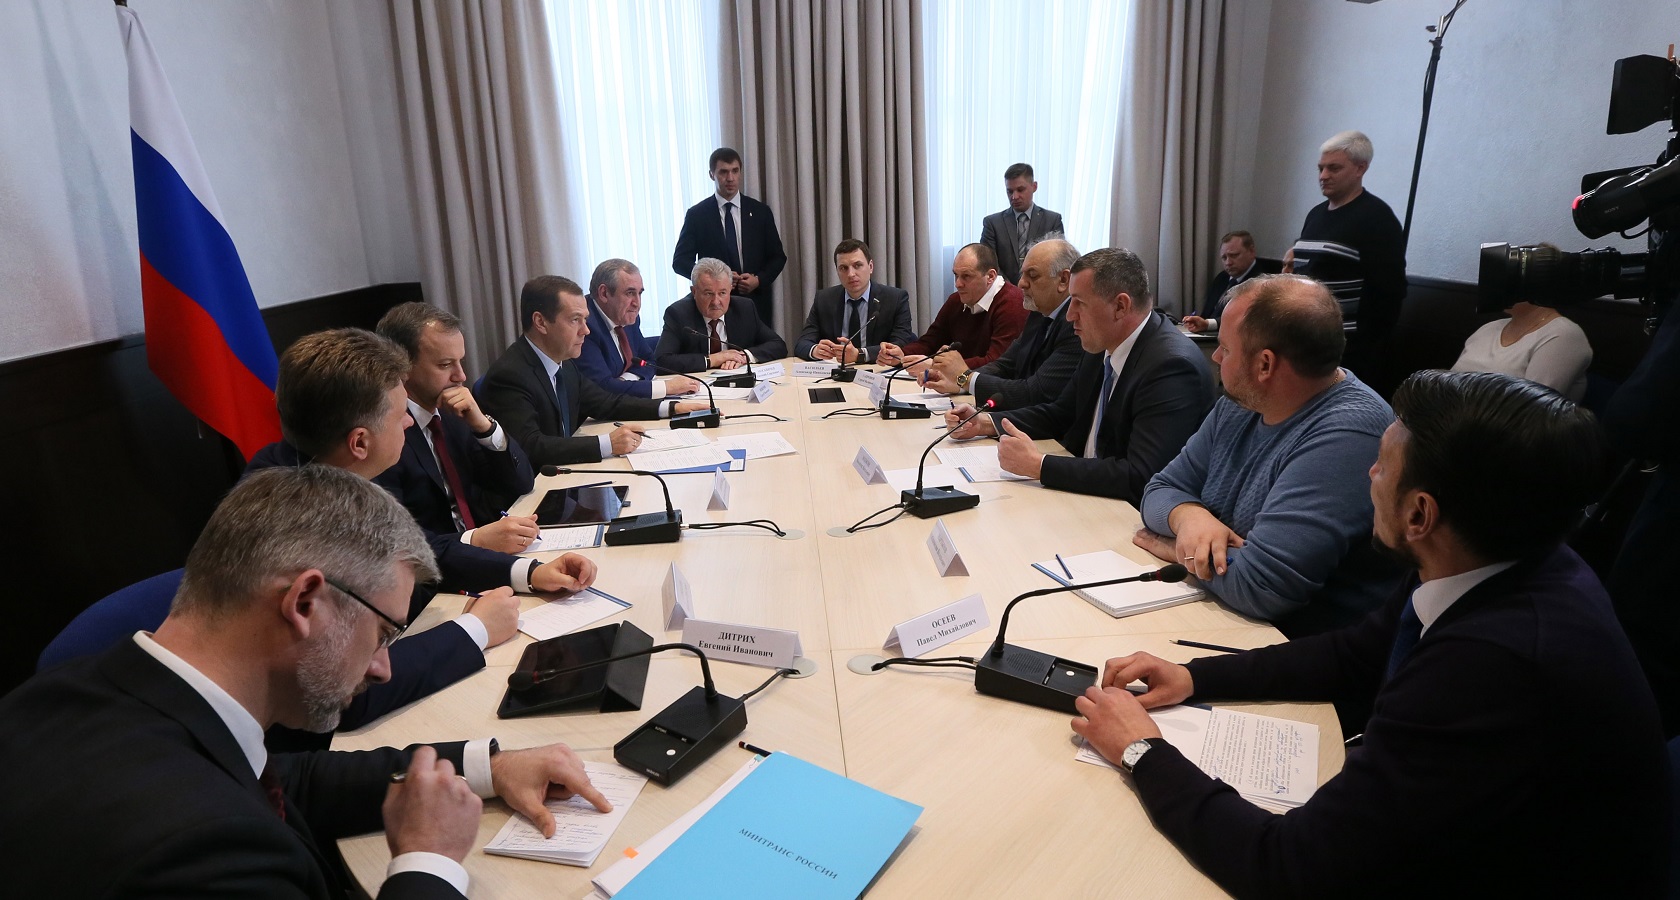 Вопрос уплаты сборов в систему «Платон» перевозчики обсуждали на встрече с премьер-министром в марте (фото: правительство РФ)